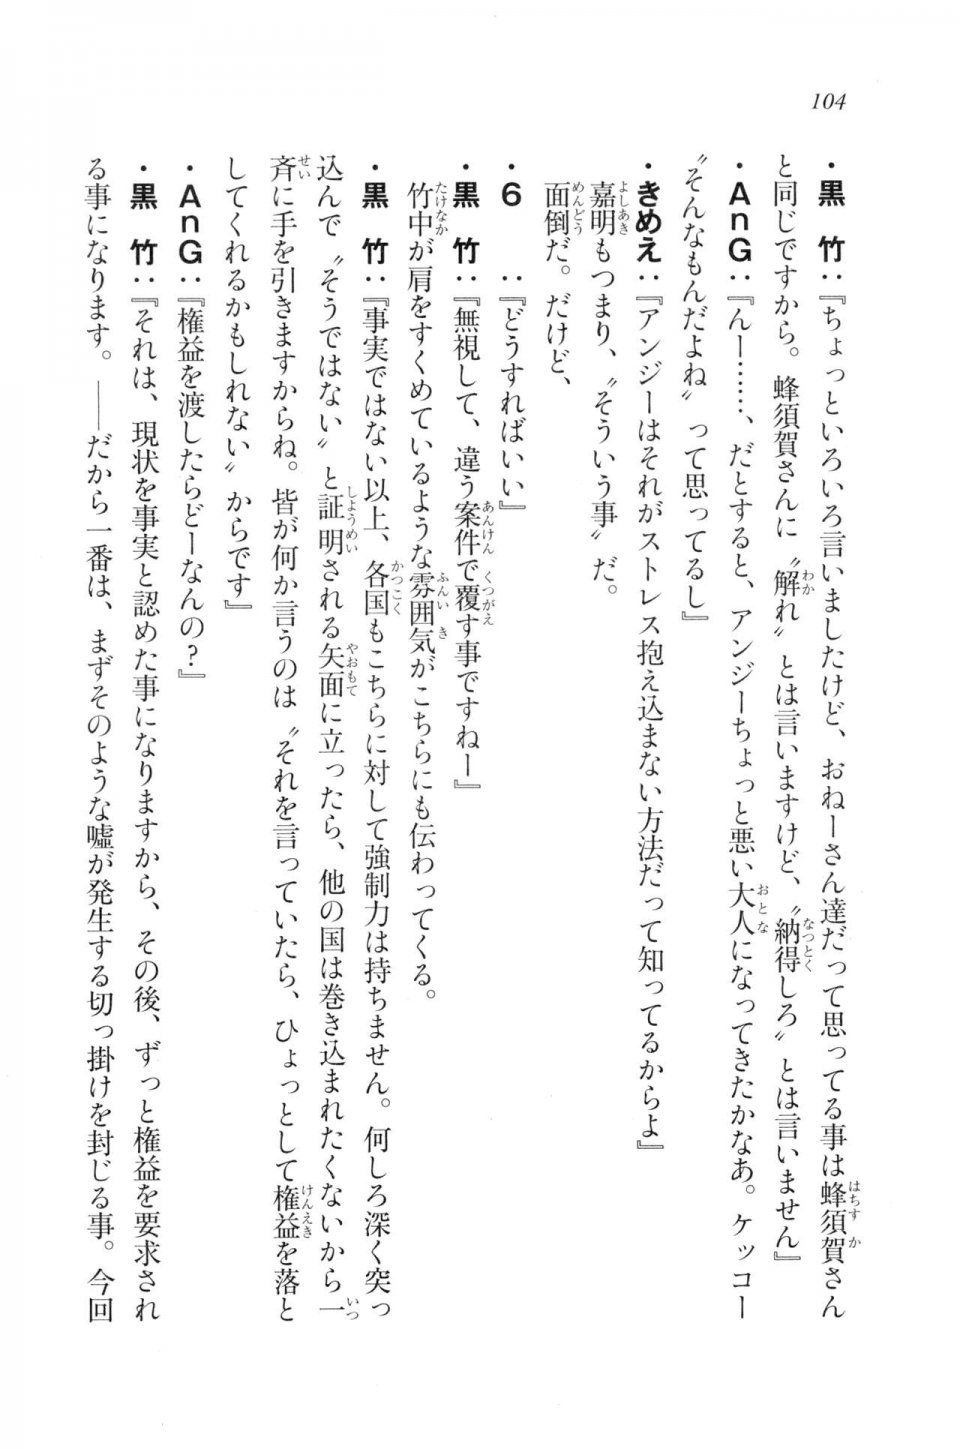 Kyoukai Senjou no Horizon LN Vol 20(8B) - Photo #104